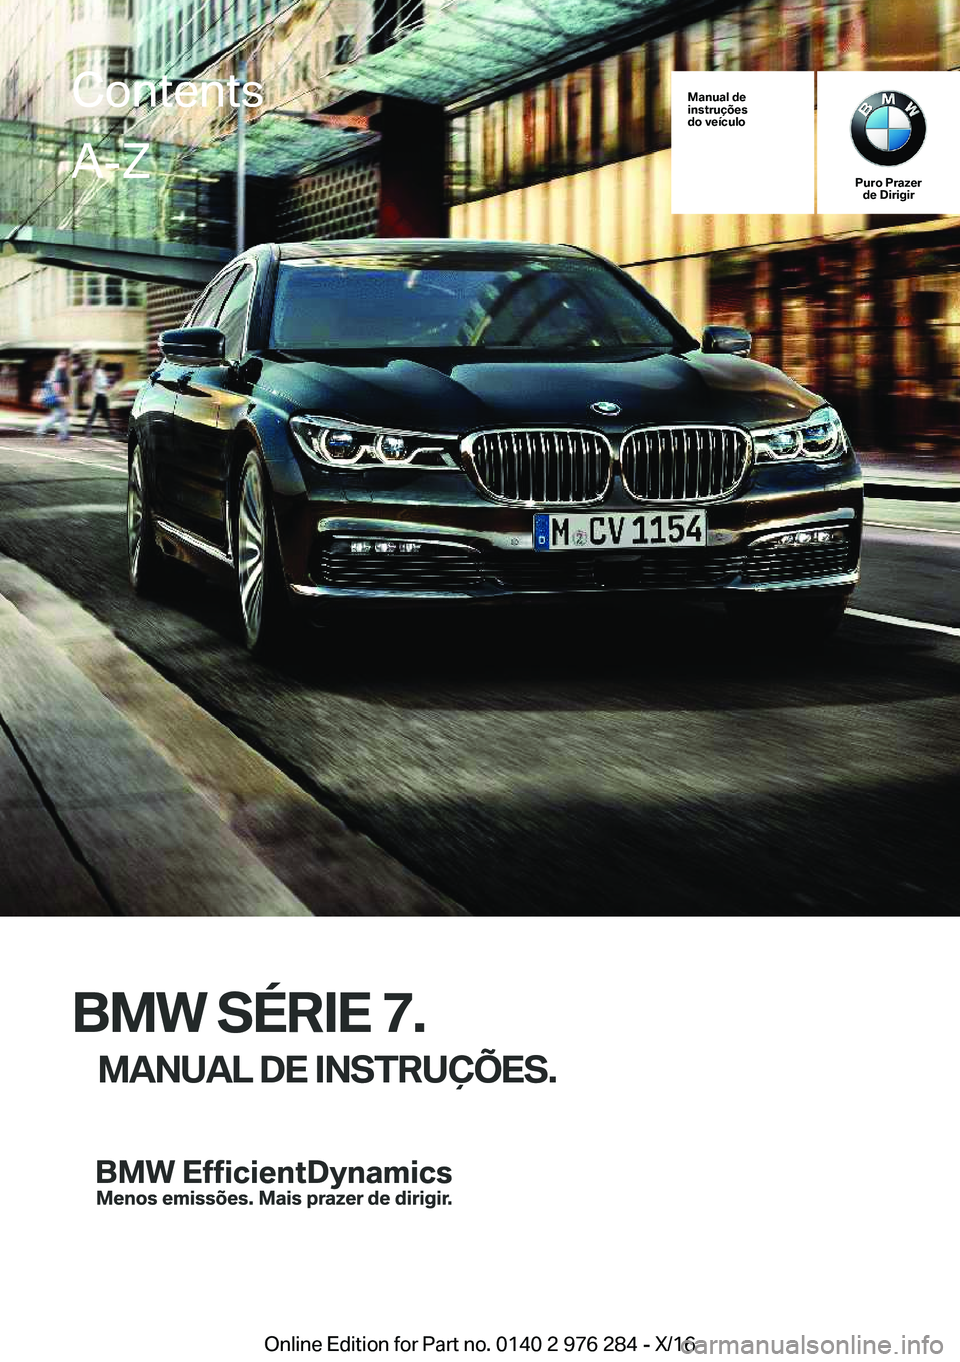 BMW 7 SERIES 2017  Manual do condutor (in Portuguese) �M�a�n�u�a�l��d�e
�i�n�s�t�r�u�